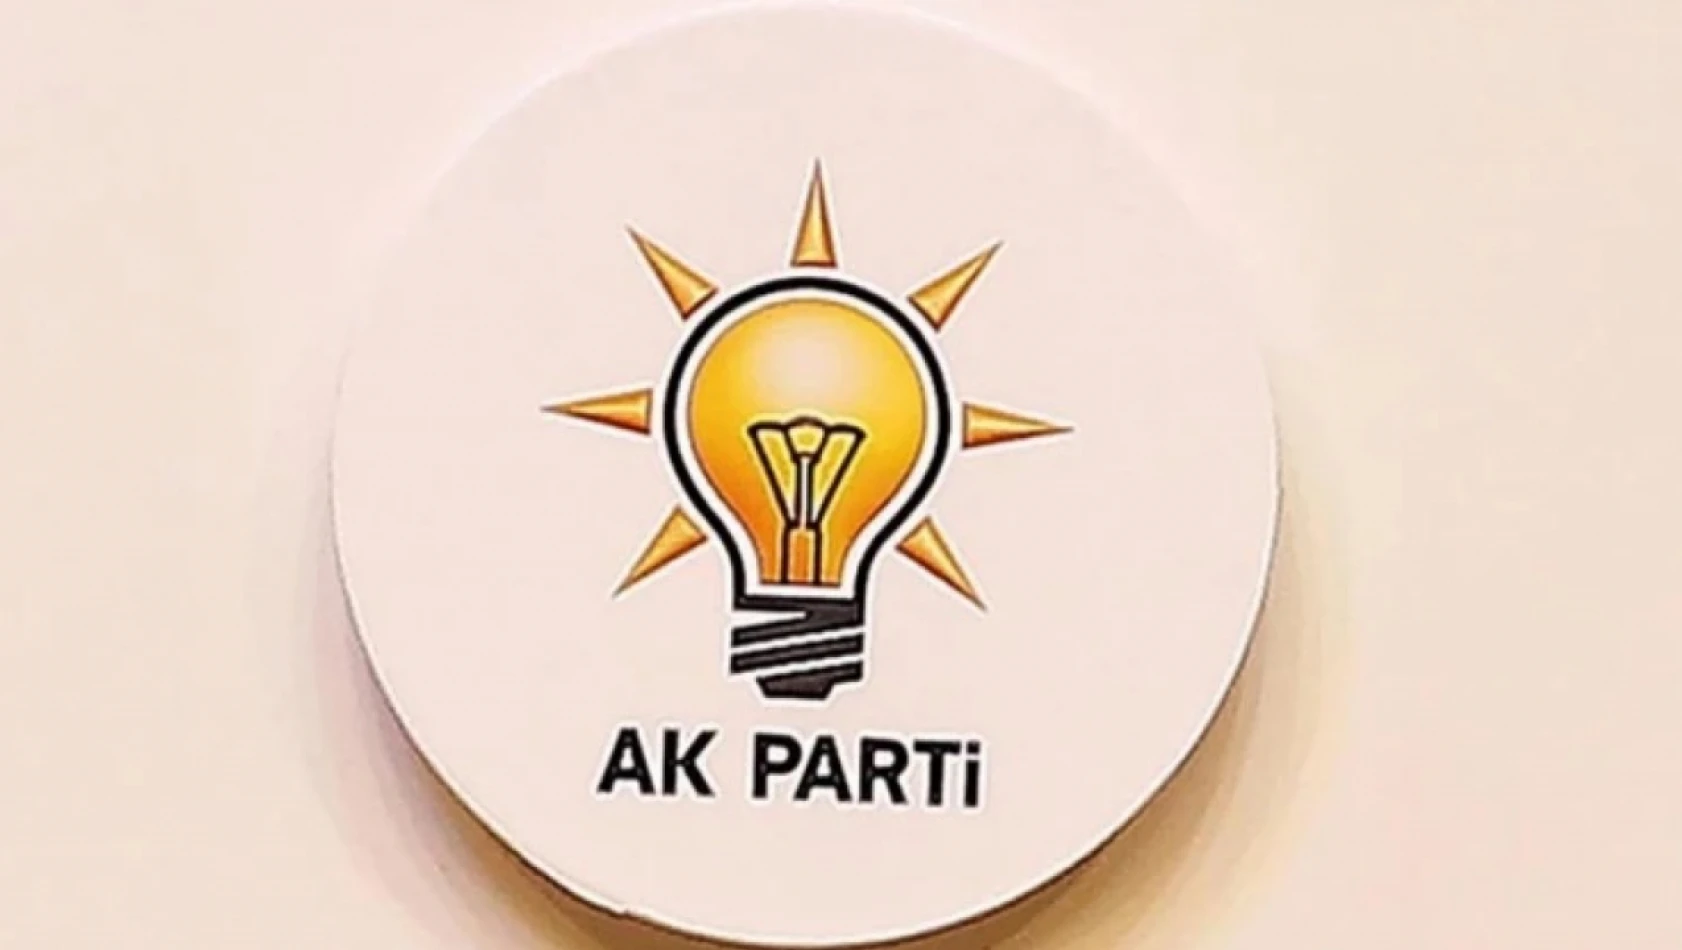 AK Partili vekillerden 'değişim' mesajı: Politika da değişsin